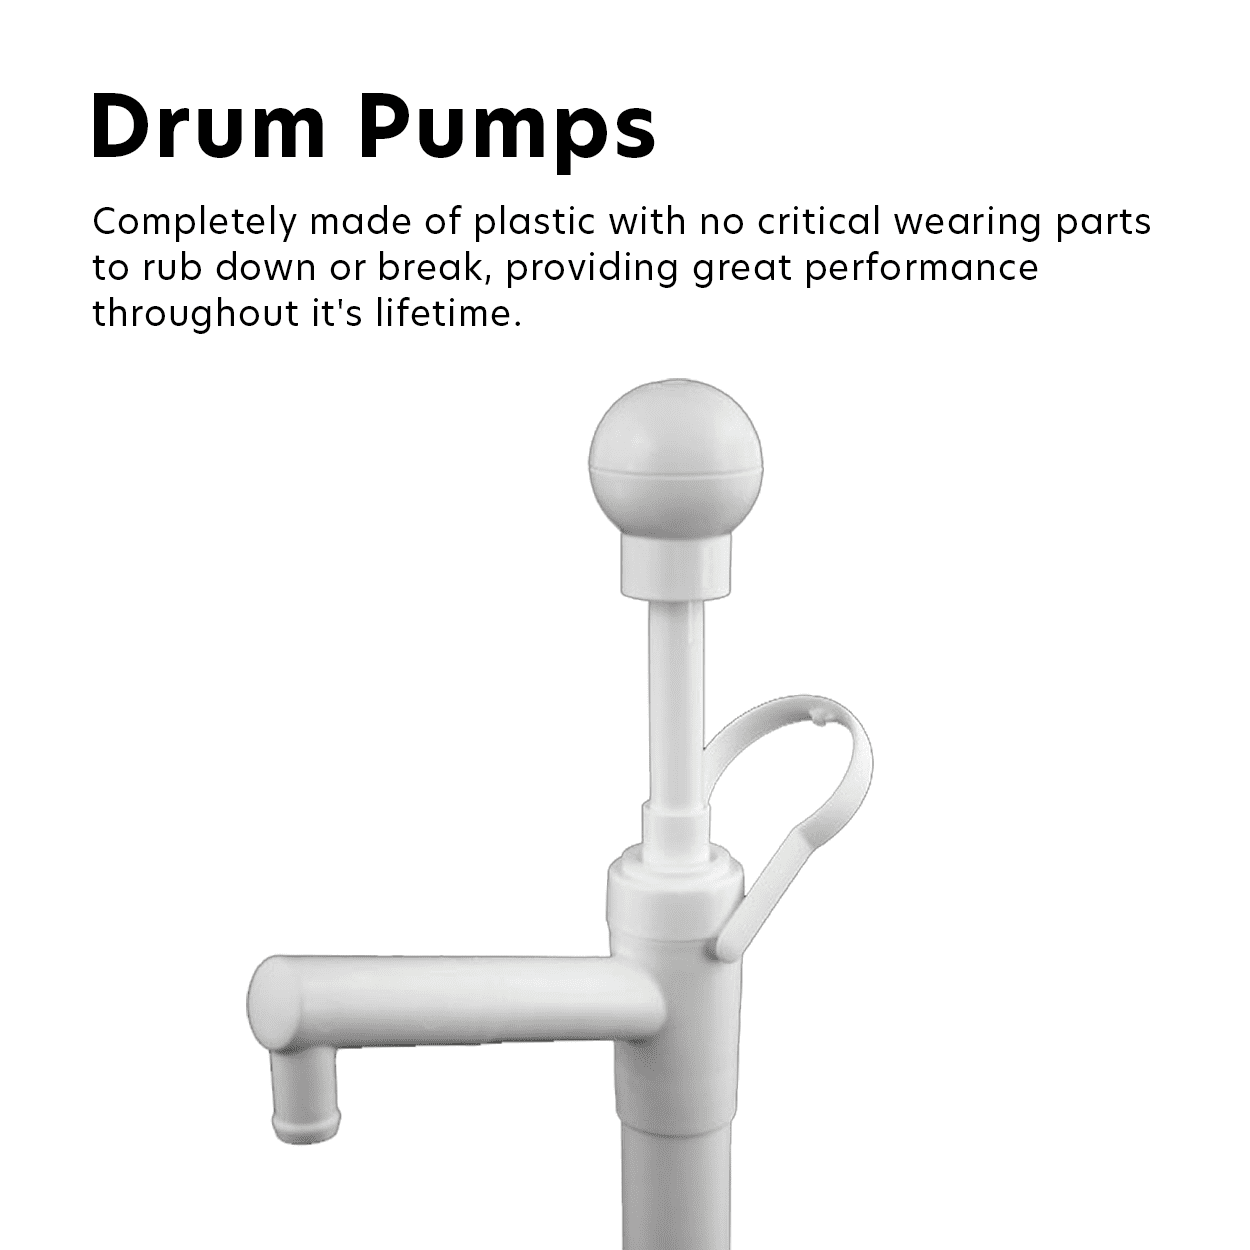 Drum Pumps